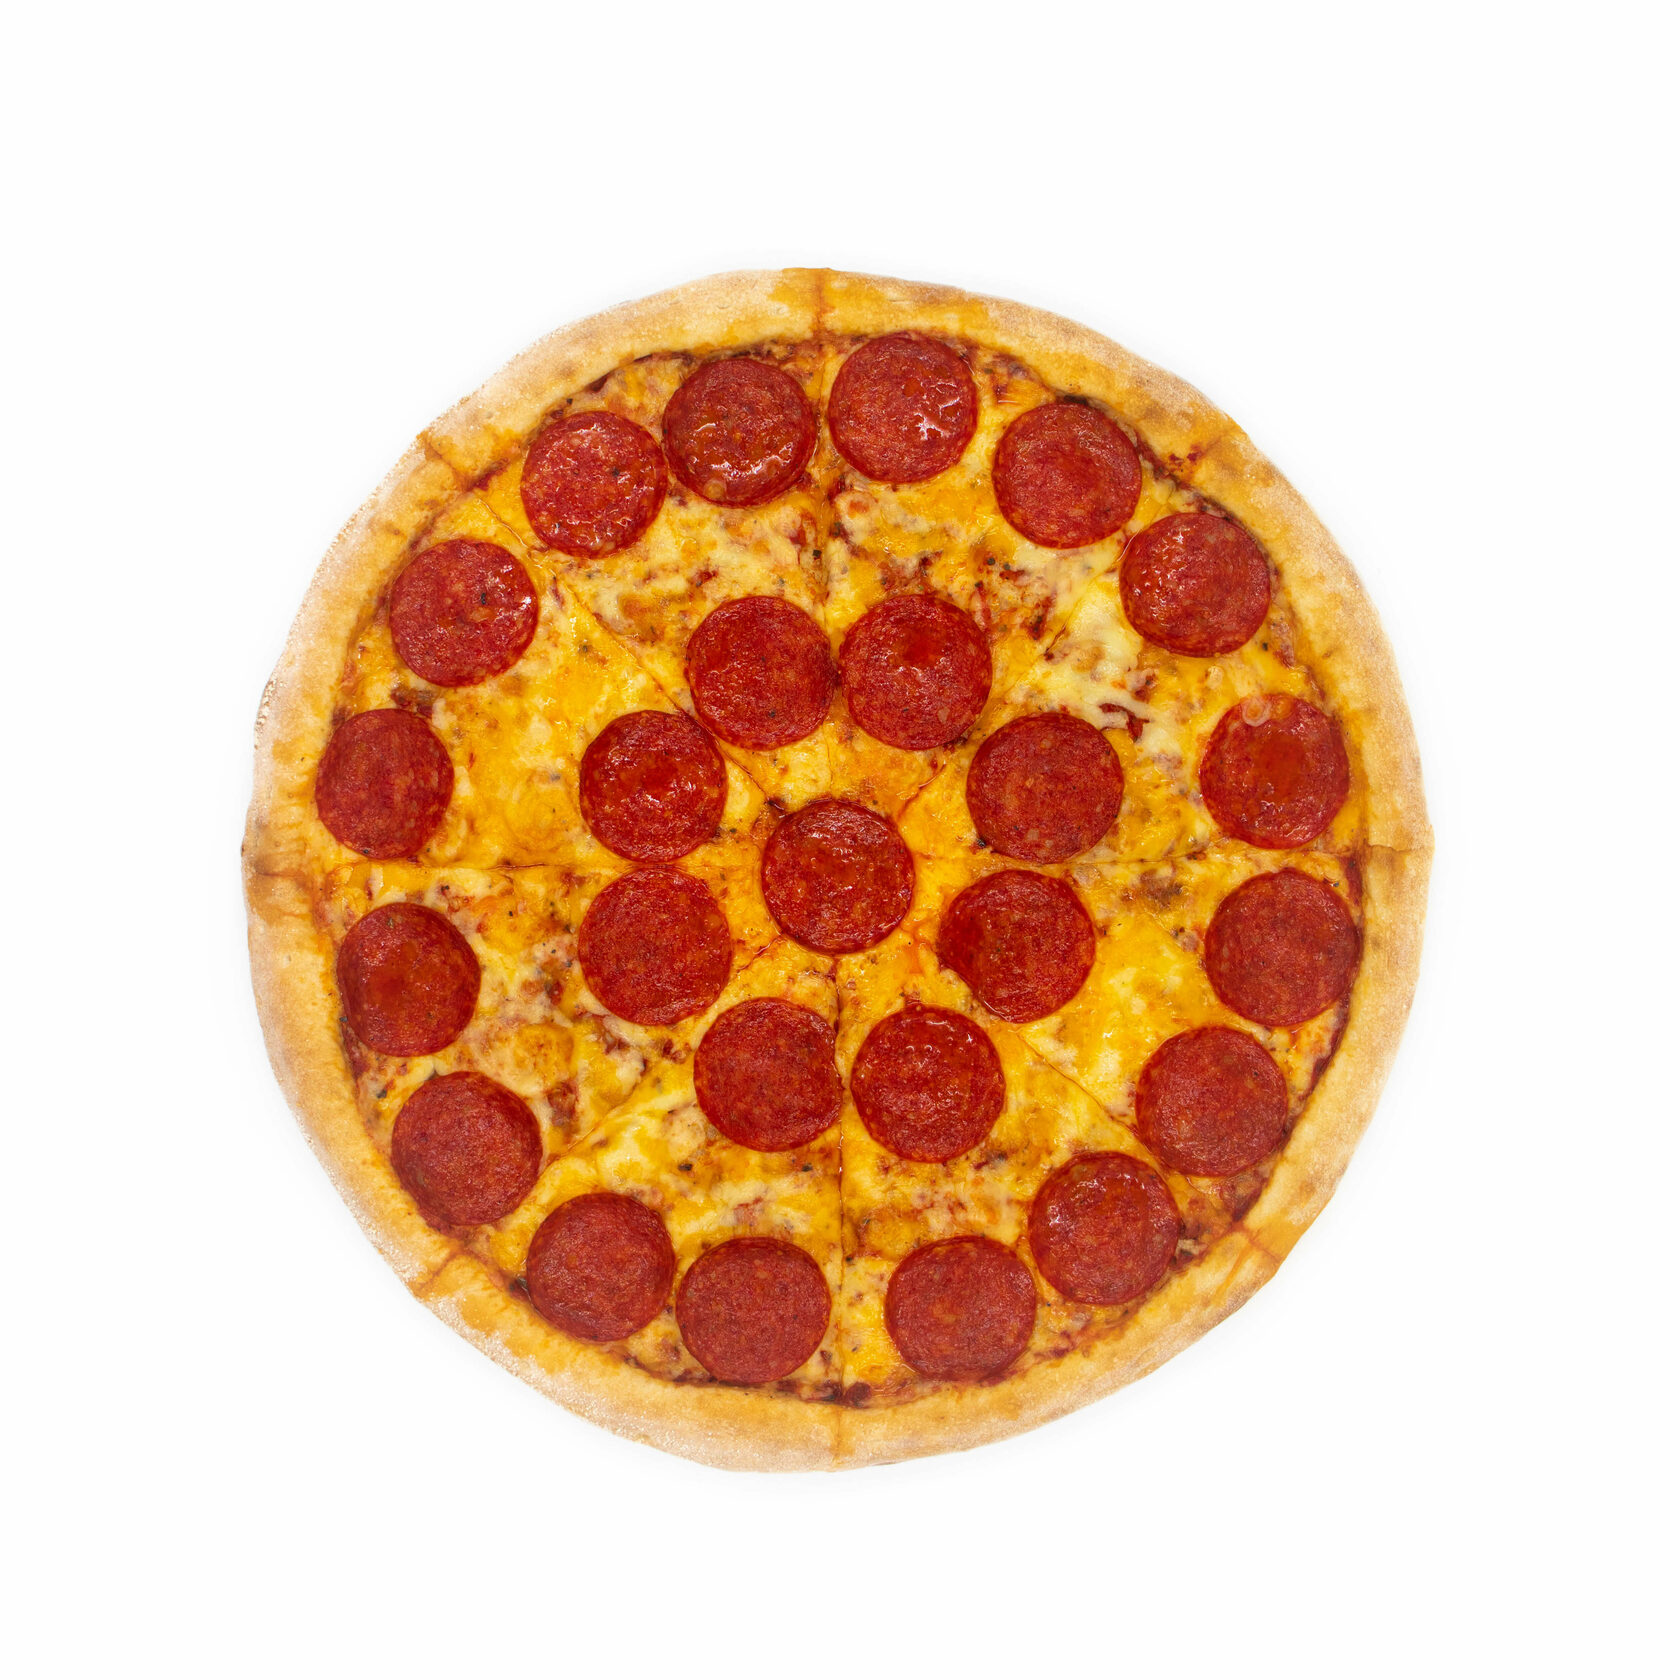 состав колбасы пиццы пепперони фото 83